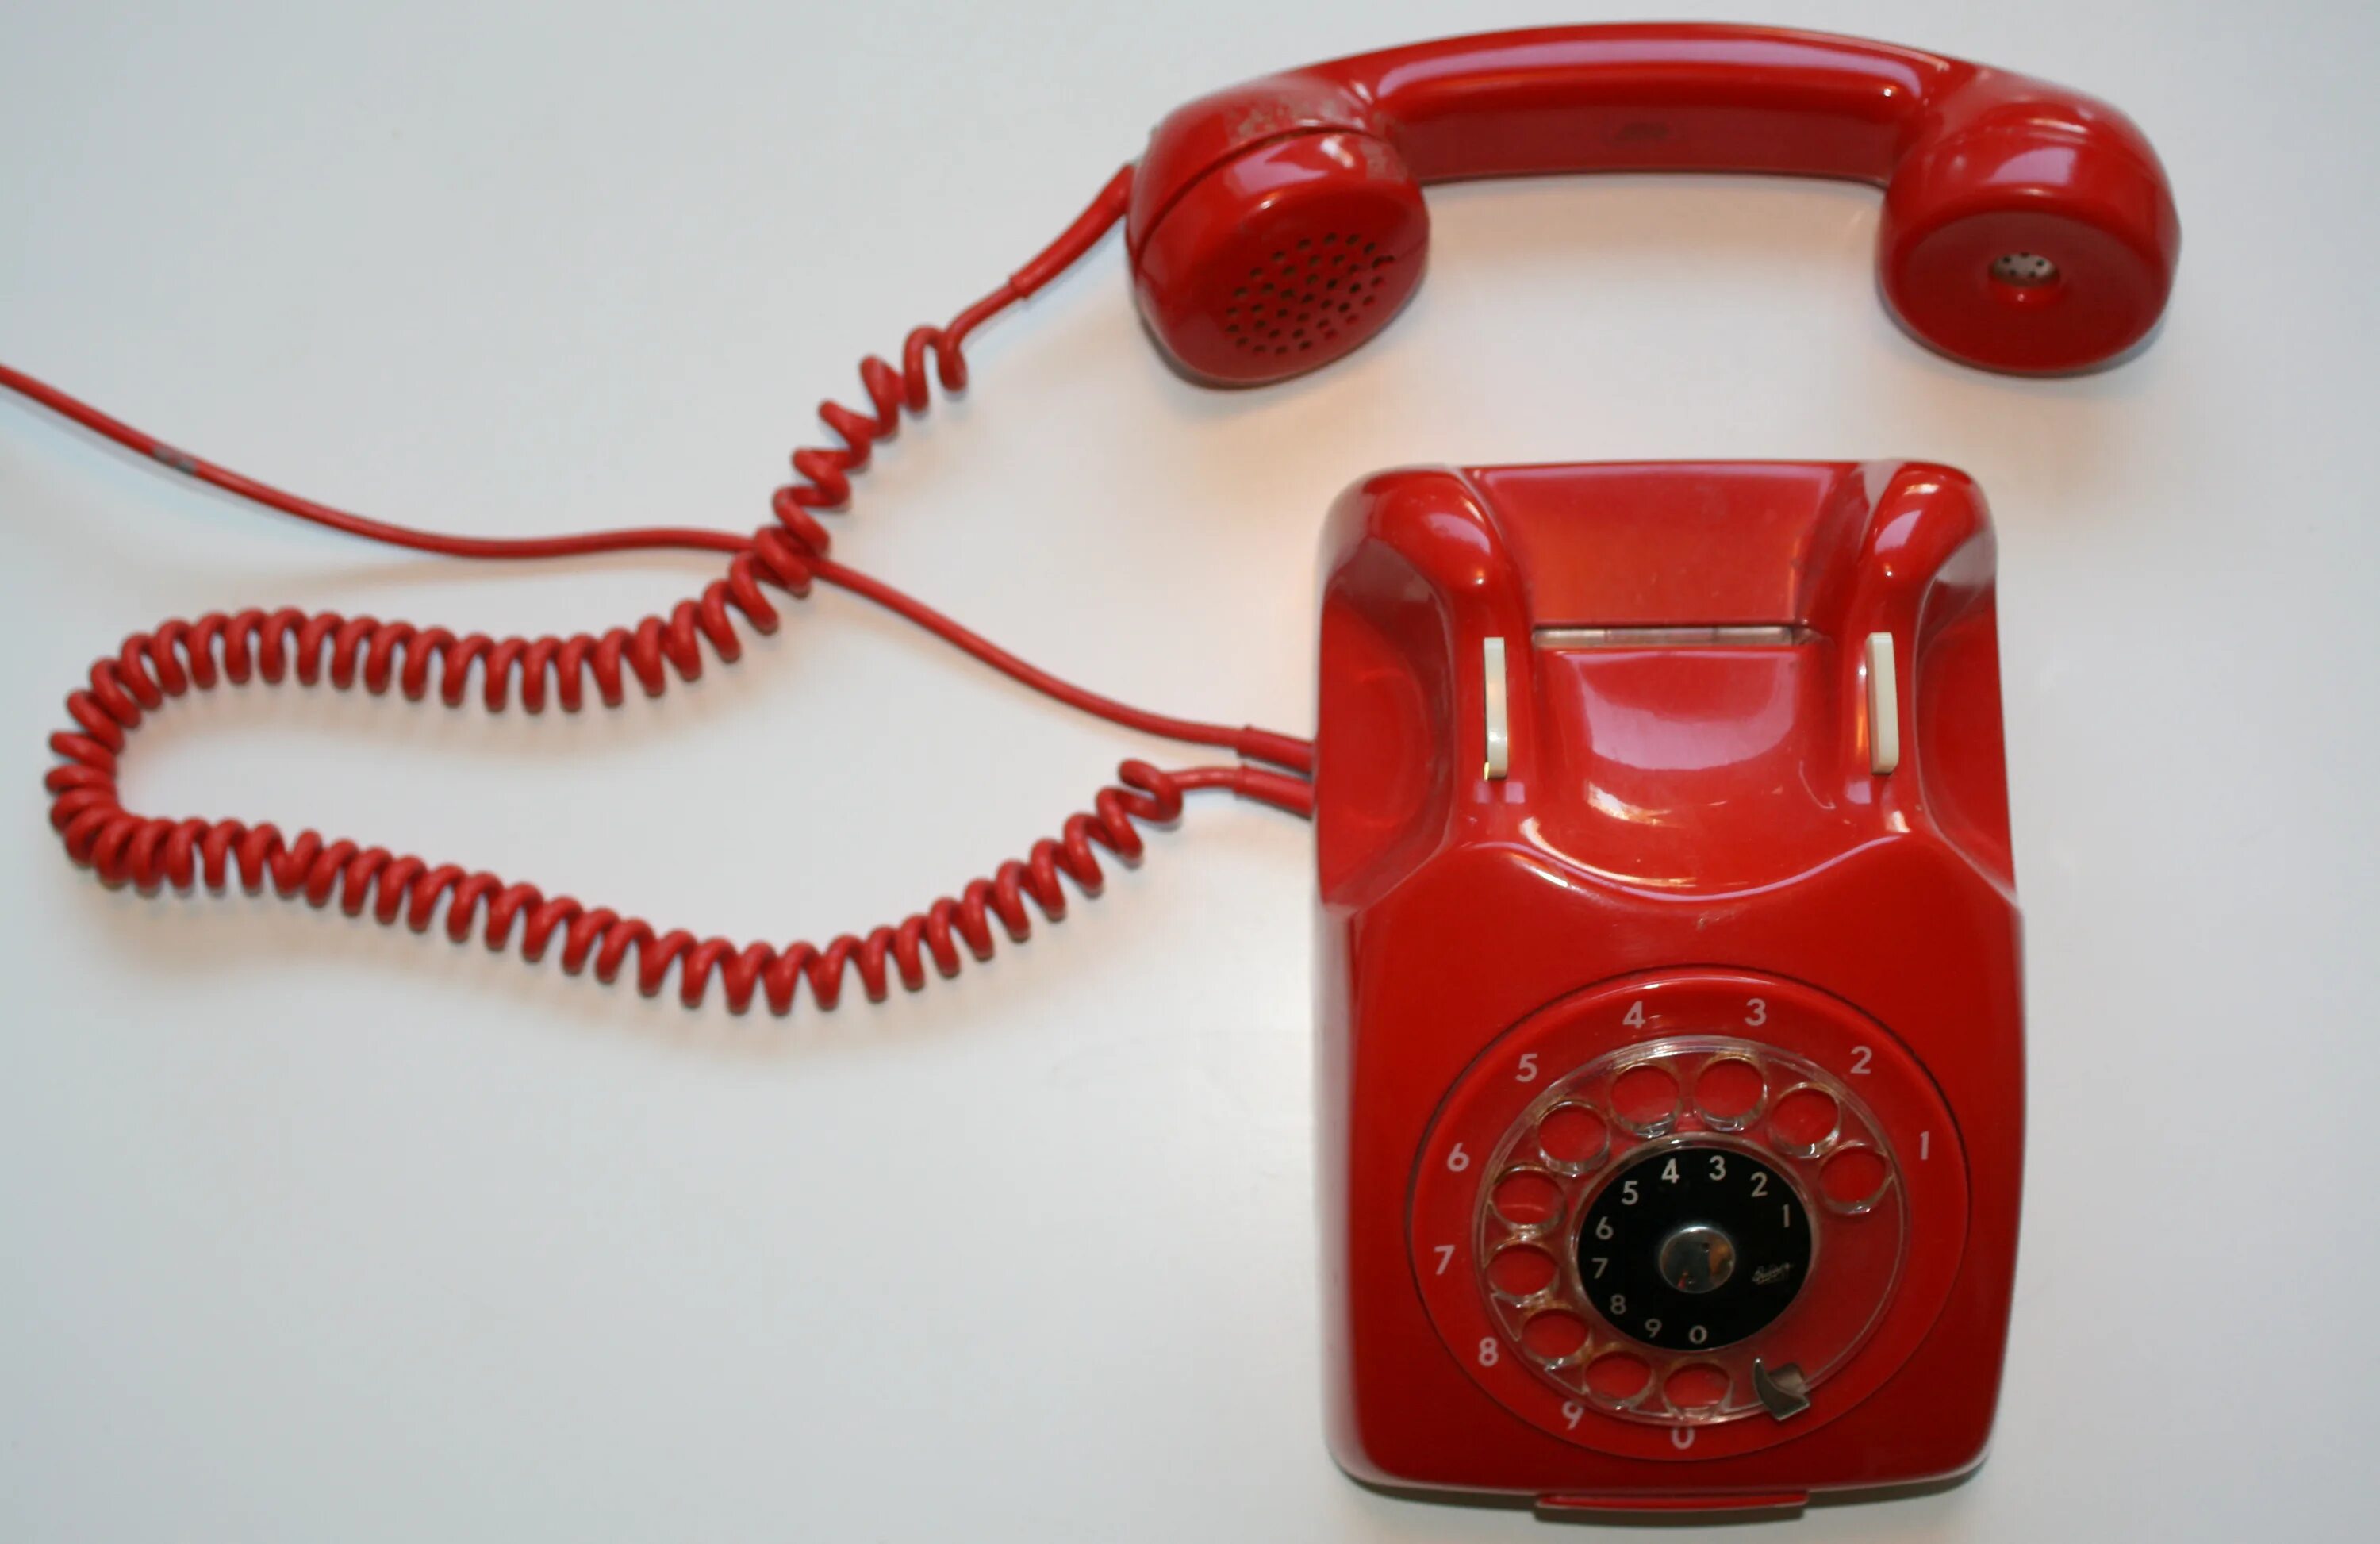 Старый красный телефон. Красный телефон. Красный телефон современный. Телефон Alcatel красный старый. Красная телефонная трубка ретро.